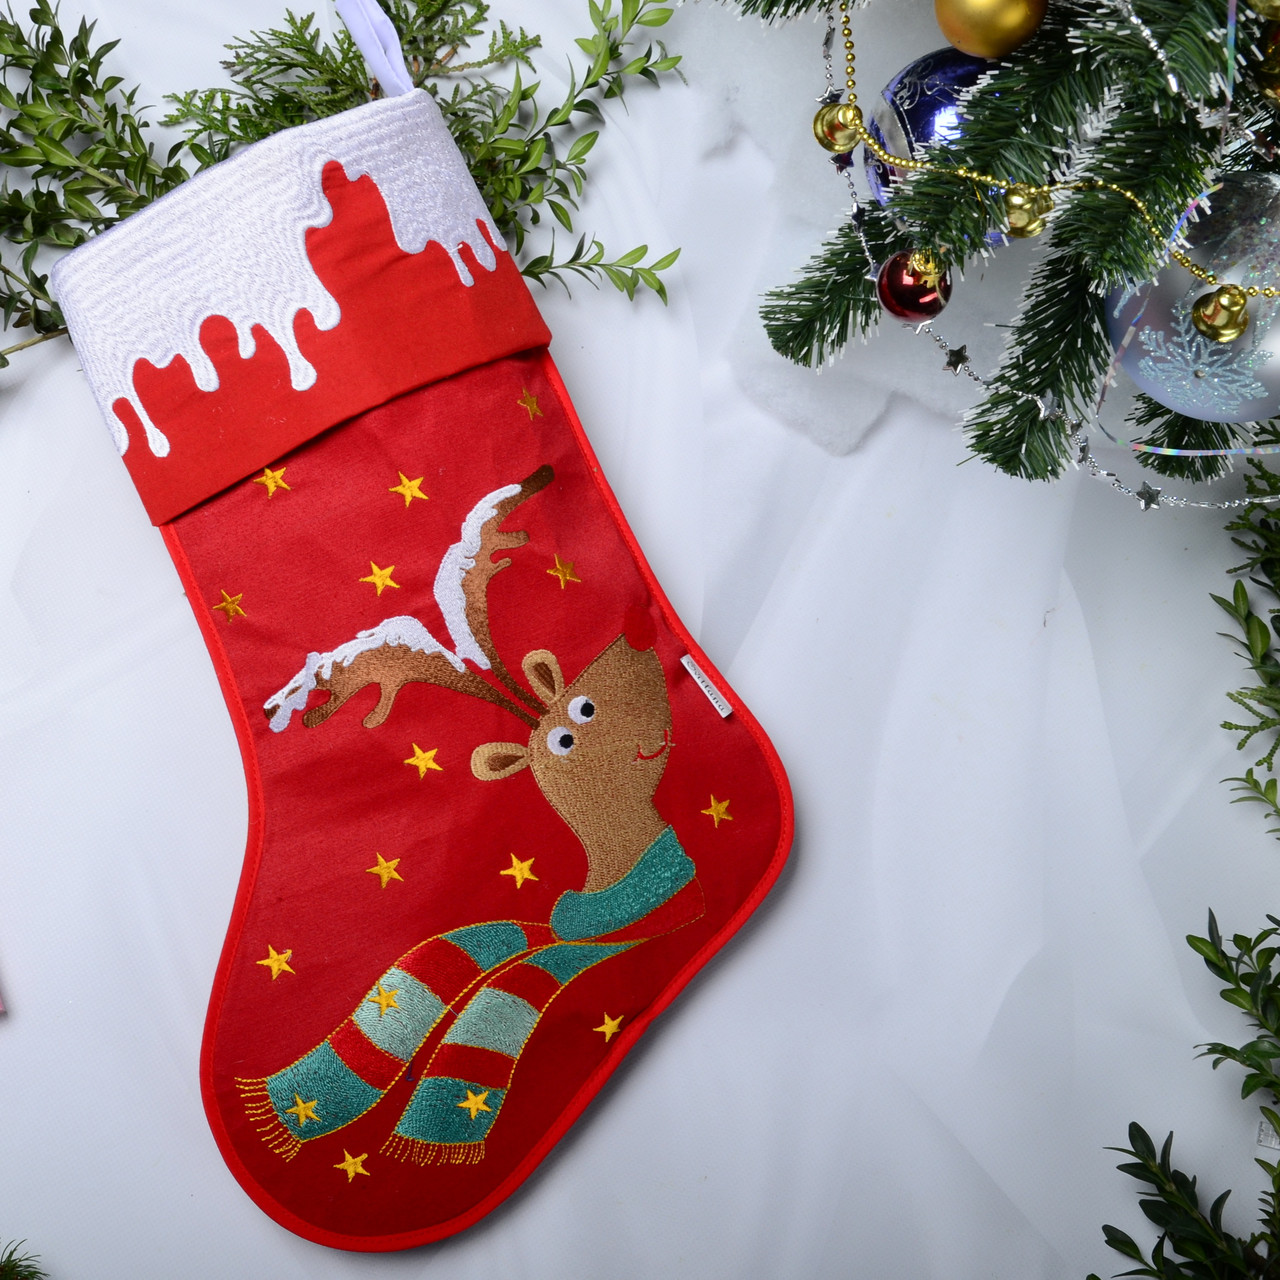 Новорічний подарунковий чобіт, Різдвяний носок, з вишивкою, червоного кольору, вишивка — олень.